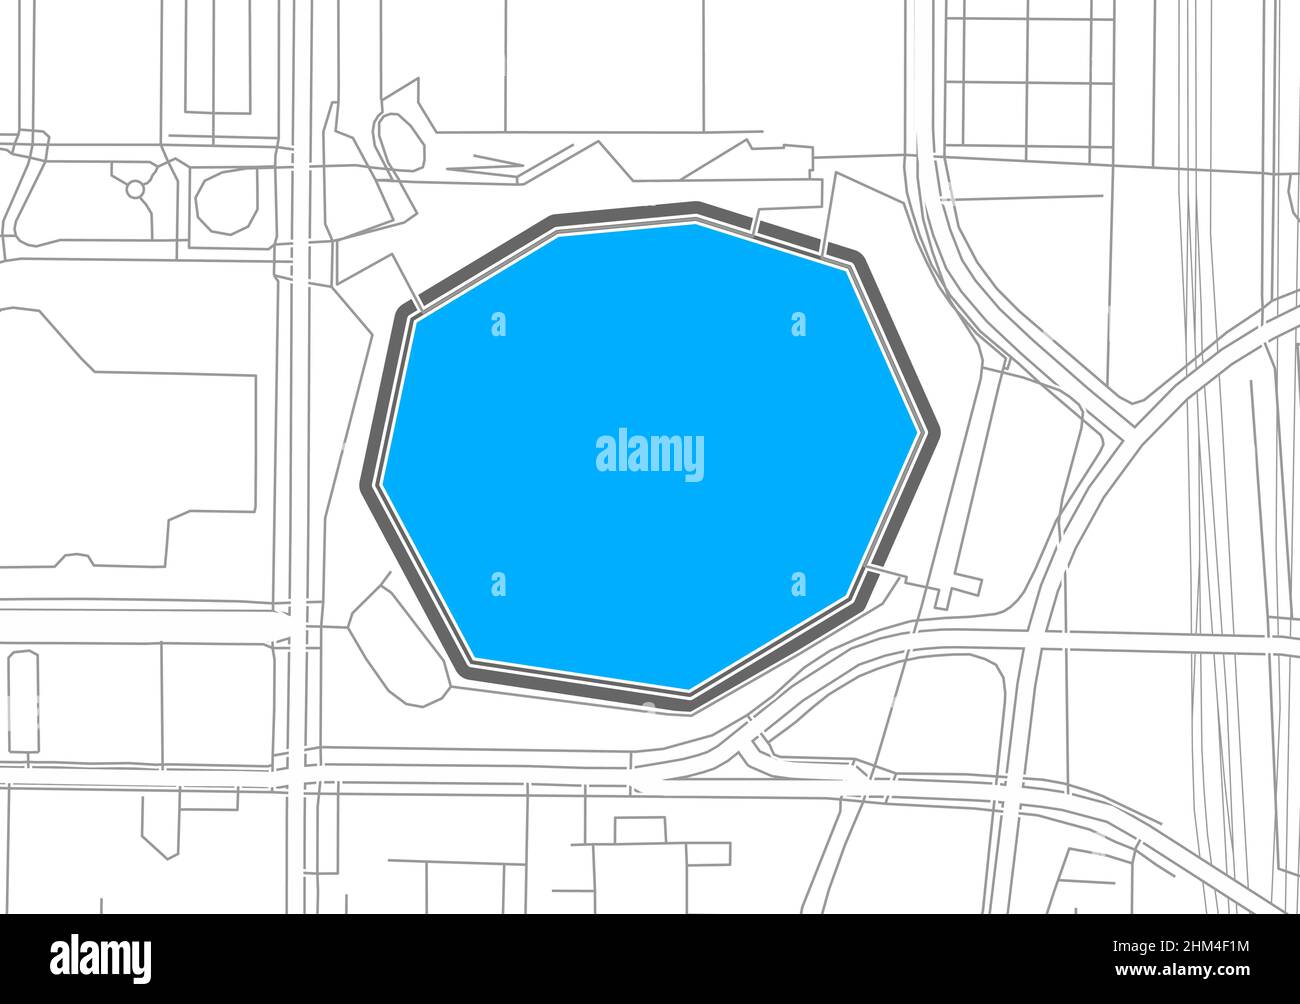 Atlanta, American Football NHL Stadium, Vektorkarte. Die Fußballstatiumkarte wurde mit weißen Flächen und Linien für Hauptstraßen, Nebenstraßen, gezeichnet. Stock Vektor